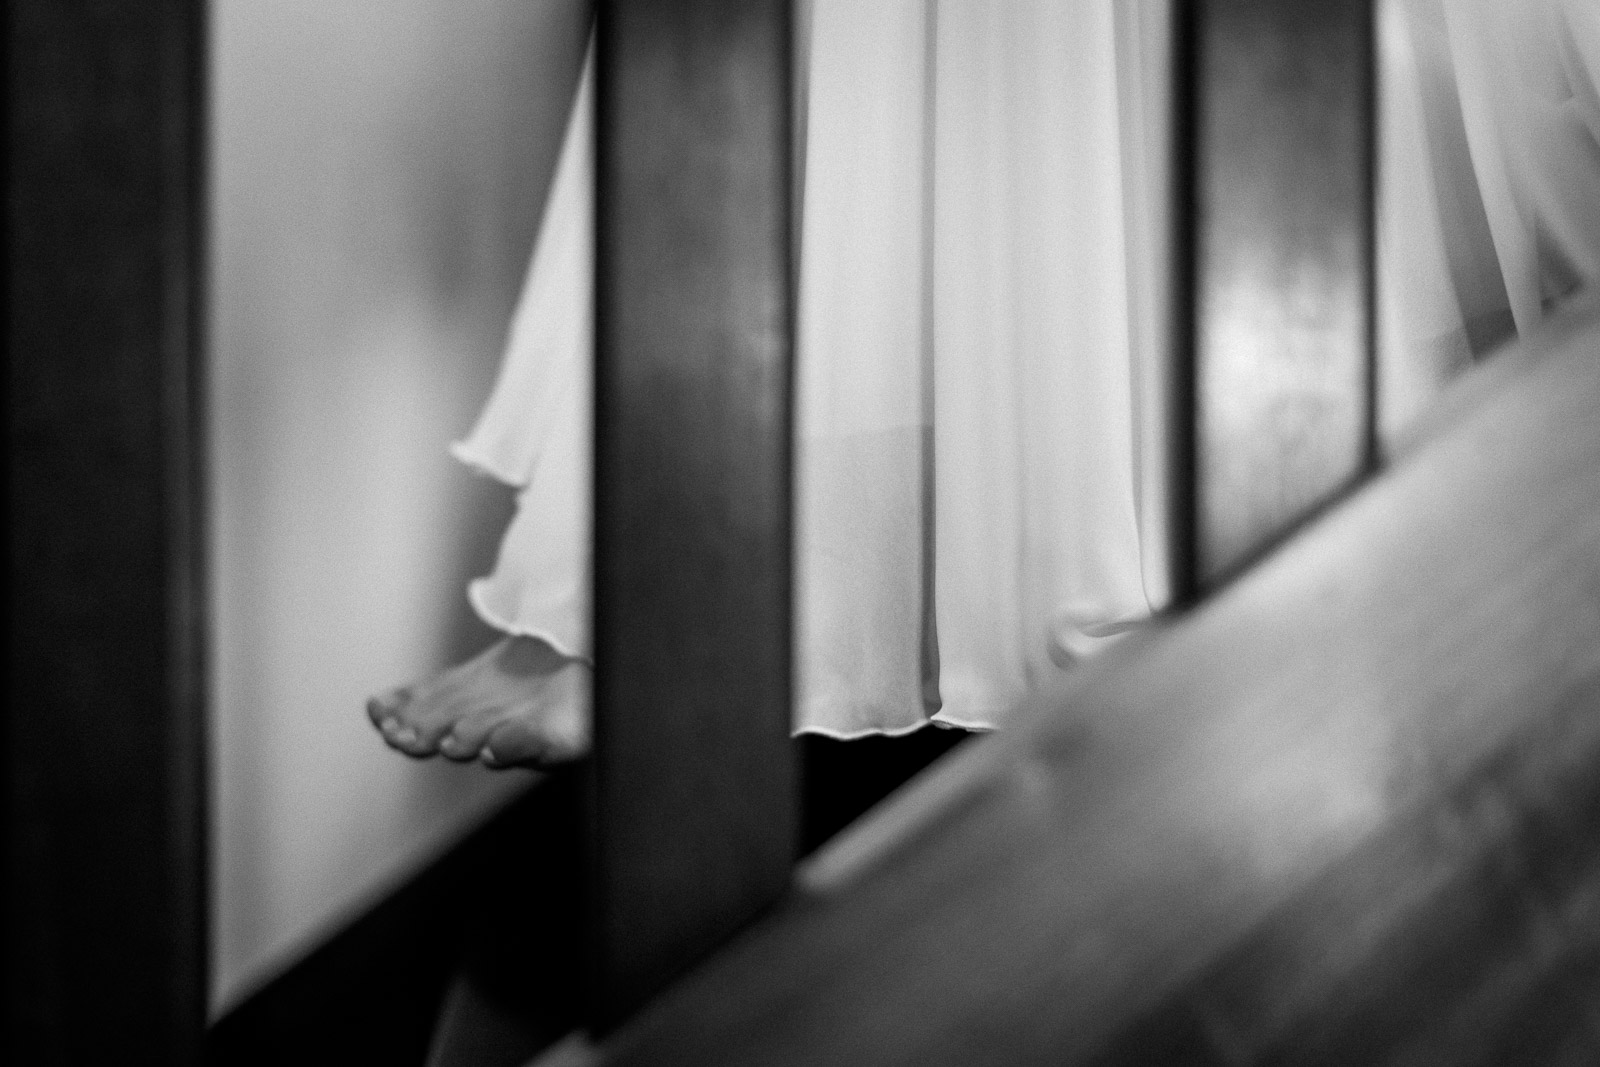 Photographie de Mathieu Dété, photographe de mariage et grossesse à Sainte-Marie, sur l'île de la Réunion 974, présentant les détails de la robe et de la mariée qui marche pour descendre les escaliers, en noir et blanc